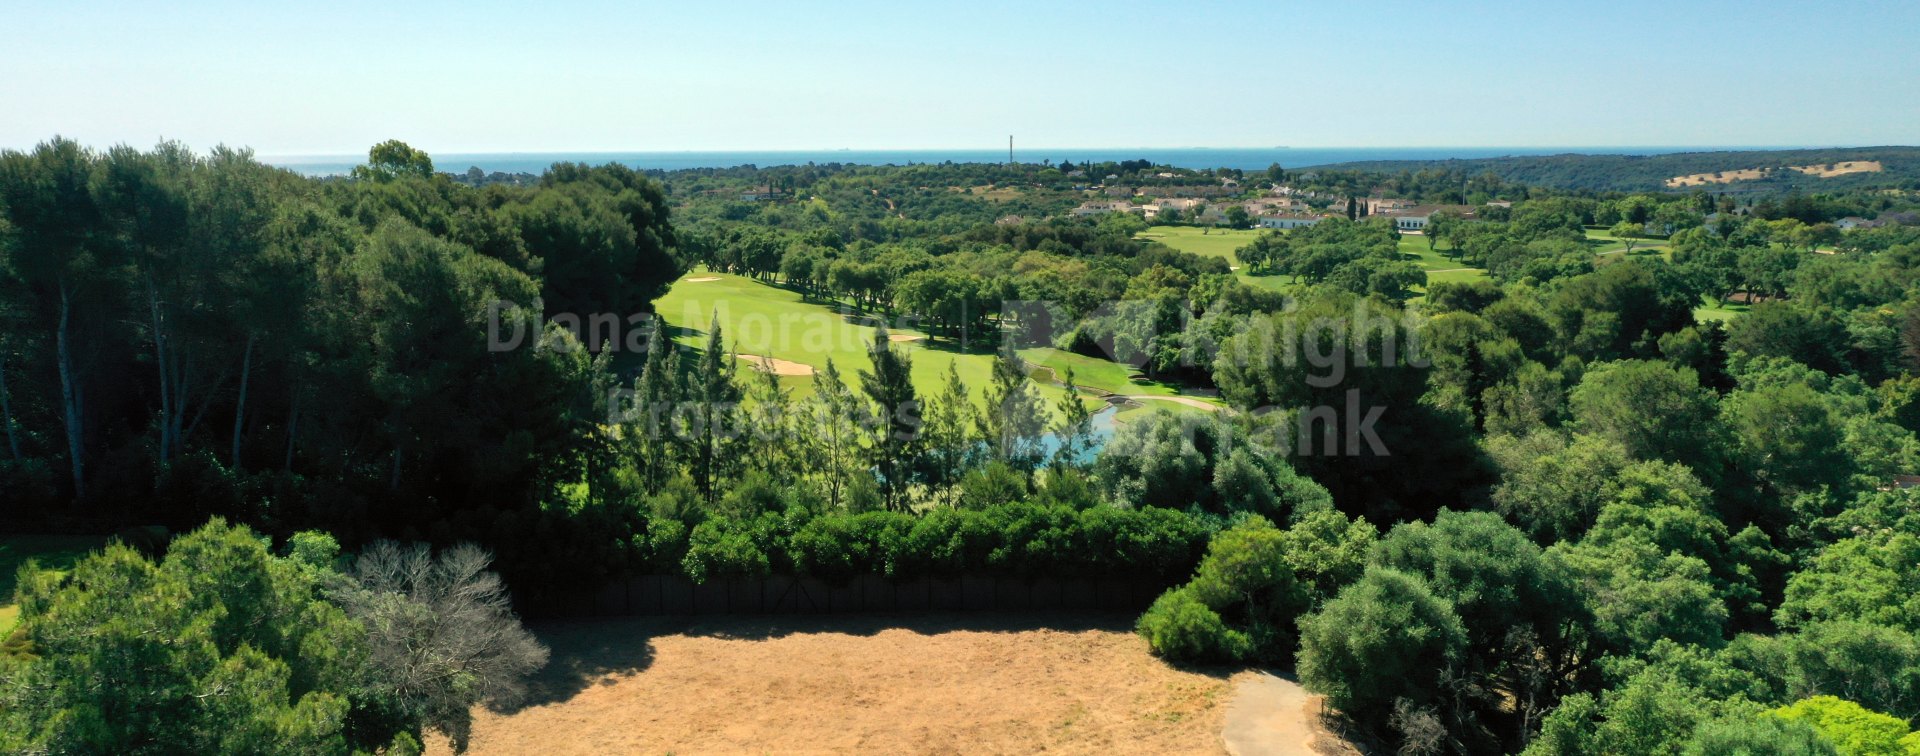 Sotogrande, Golfgrundstücke in erster Reihe in Valderrama zu verkaufen